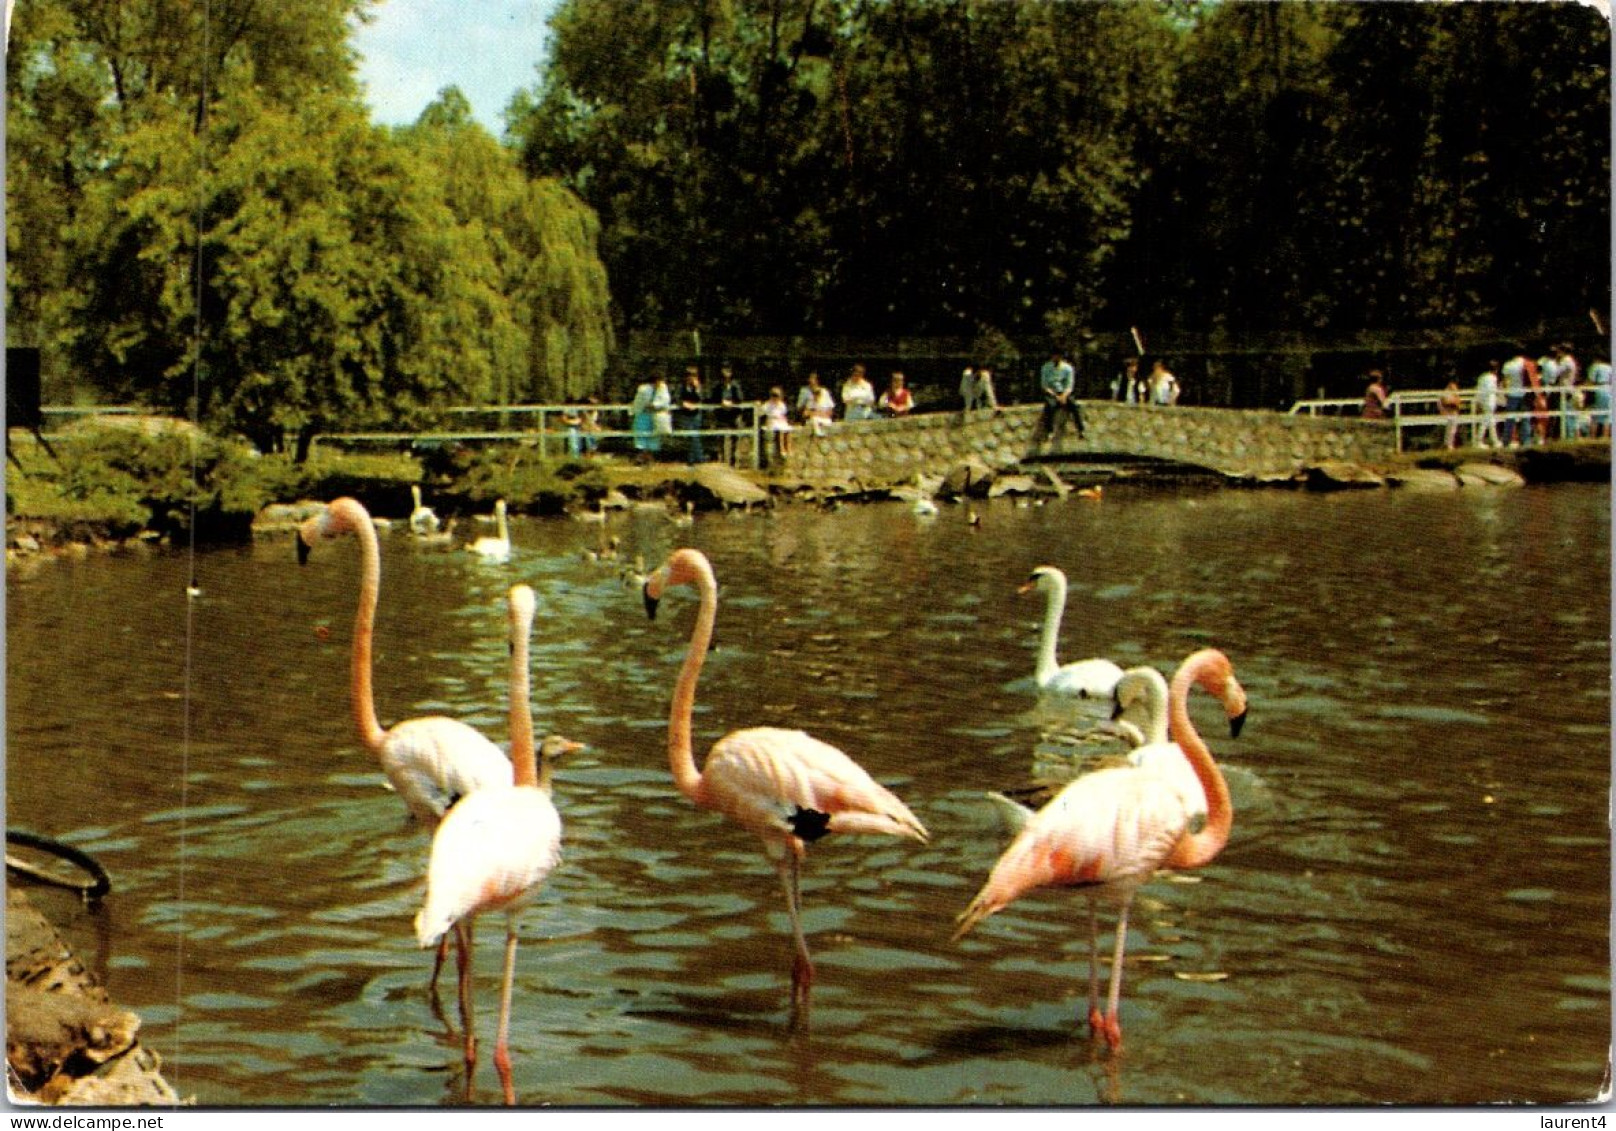 30-12-2023 (3 W 15) France - Parc De Saint Vrain (ZOO) Flamand Roses / Pink Flamingo Birds - Saint Vrain